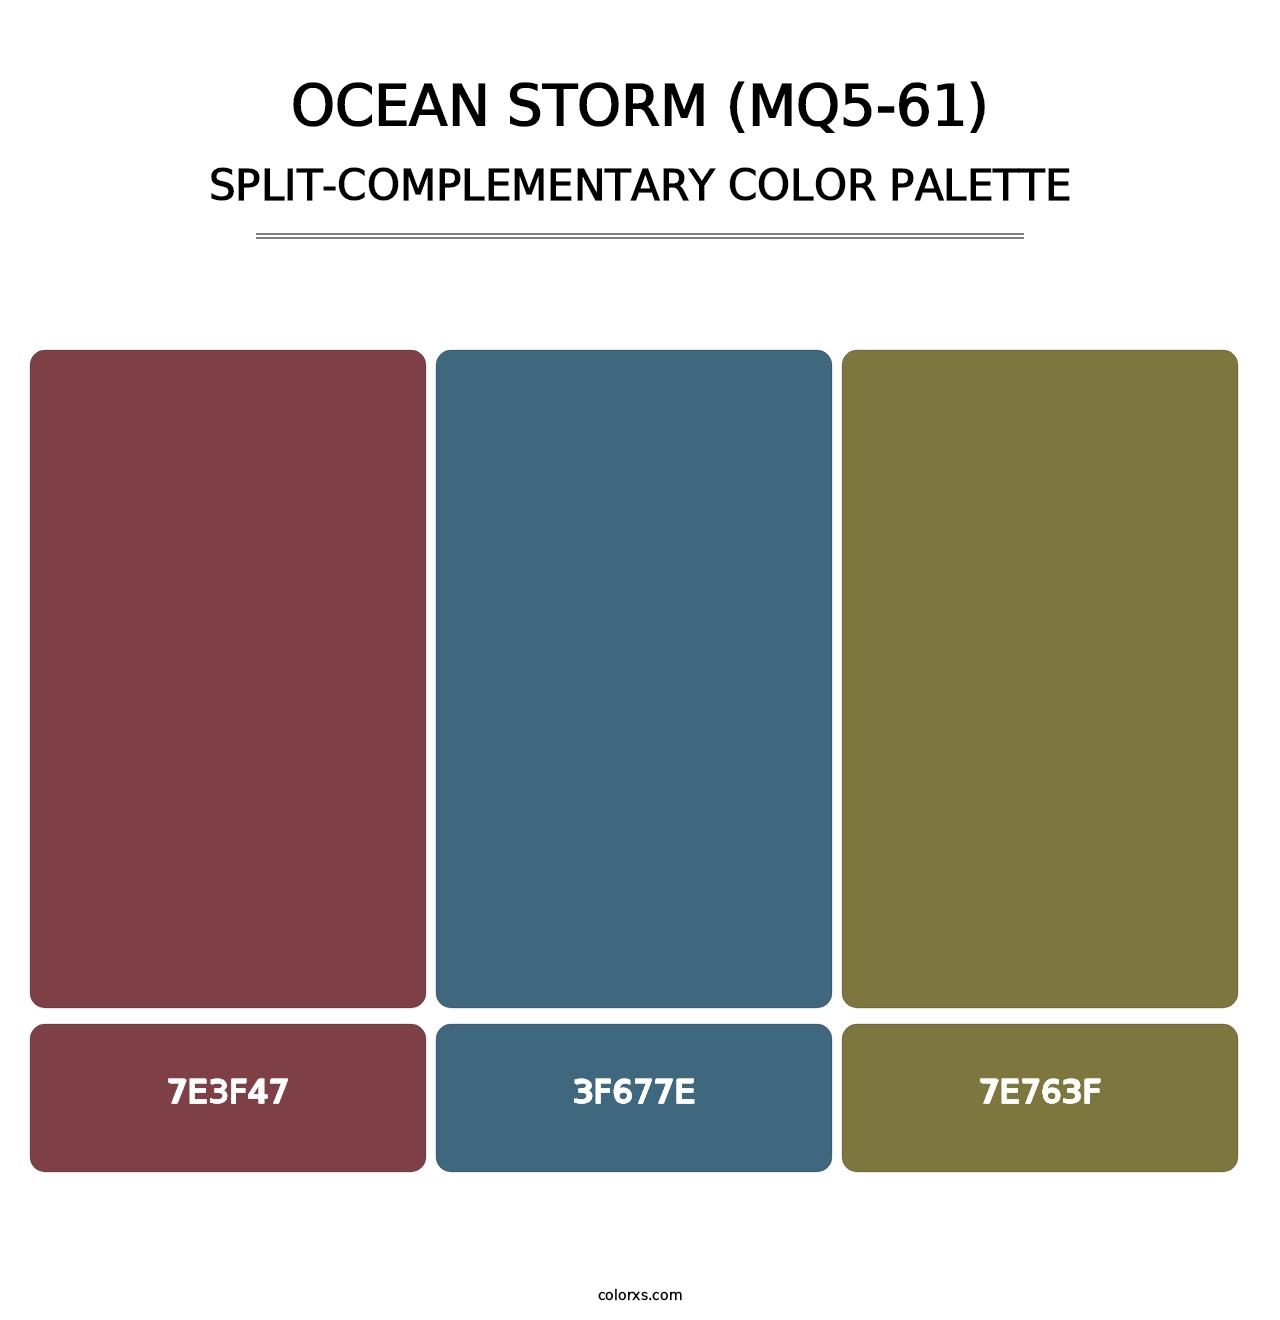 Ocean Storm (MQ5-61) - Split-Complementary Color Palette